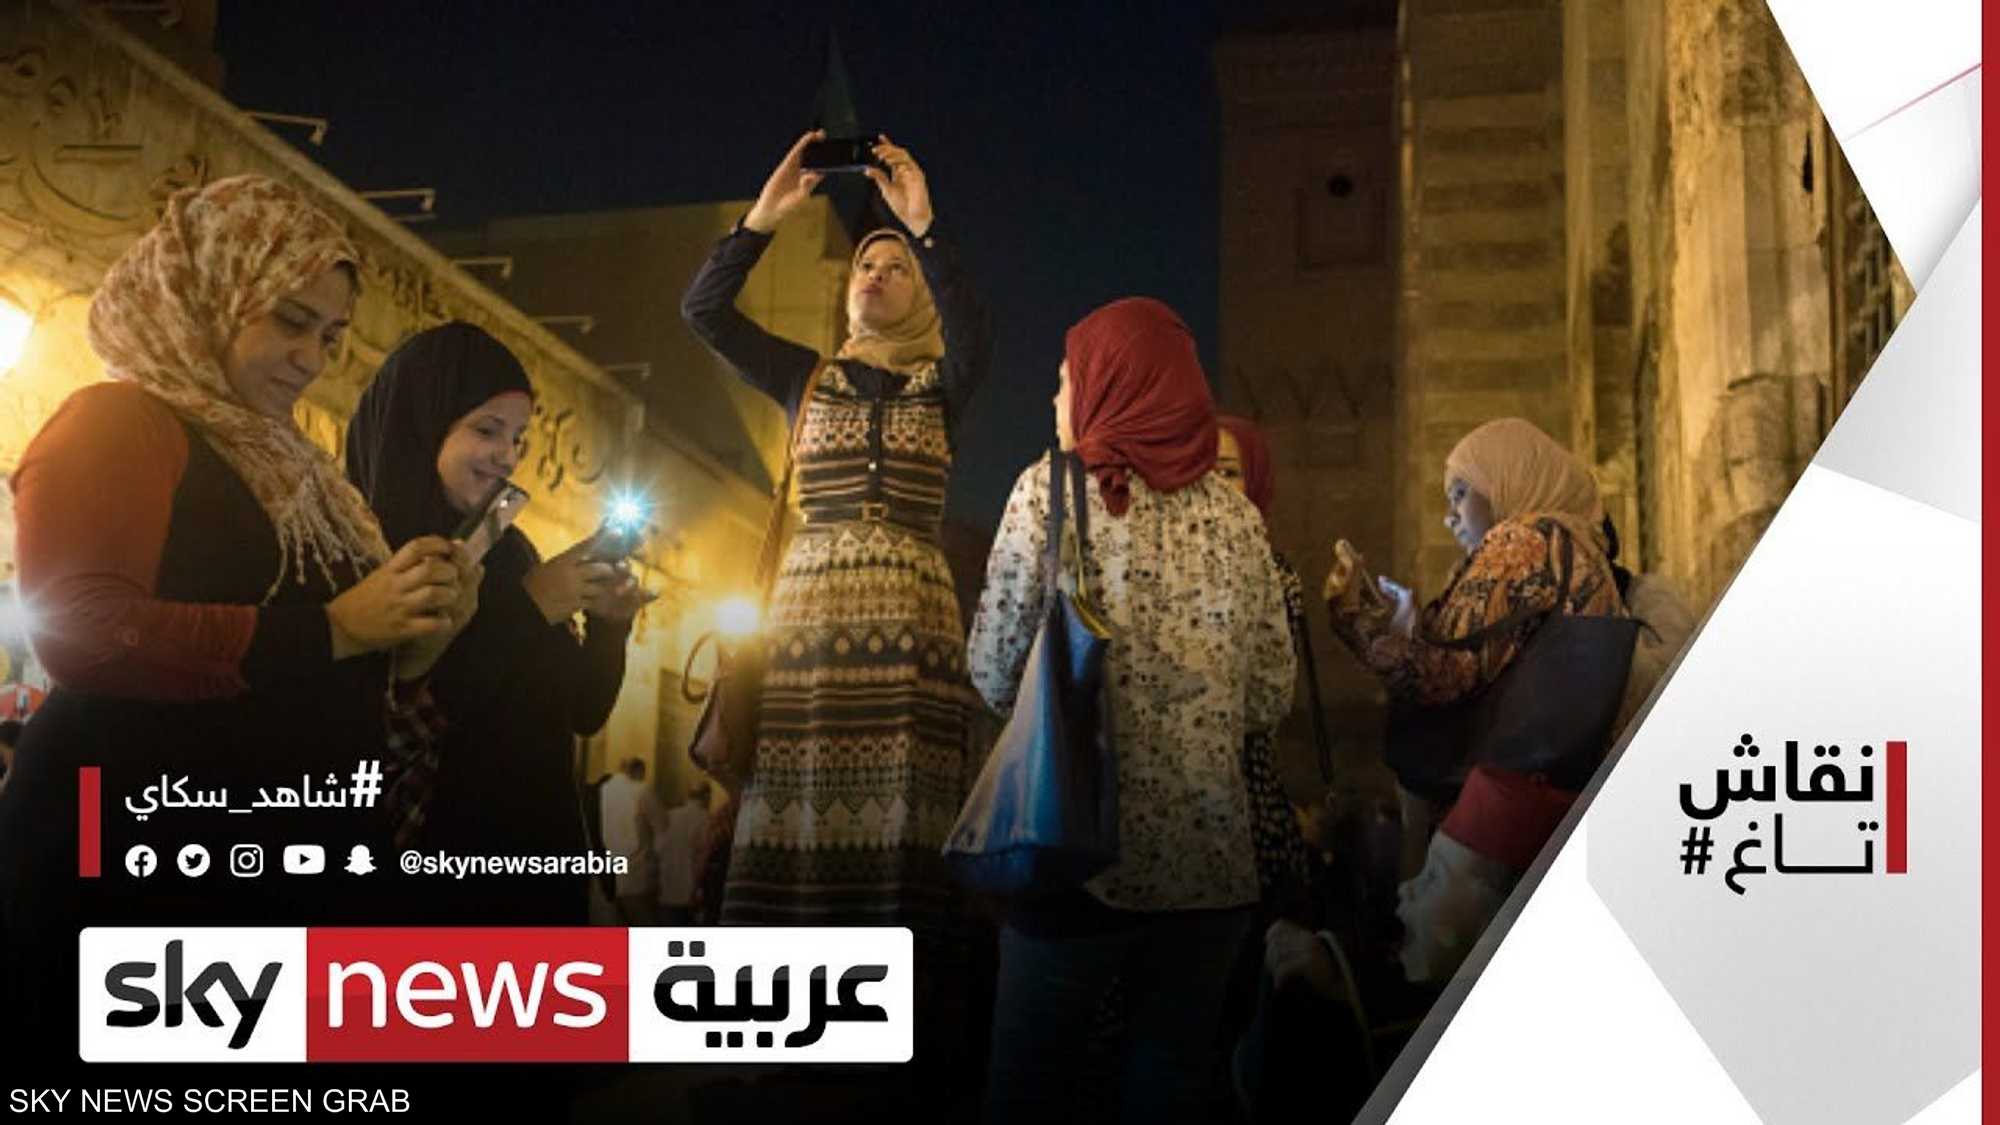 جدل الحجاب يعود مجددا في مصر فهل السلوكيات تقترن بزي معين؟